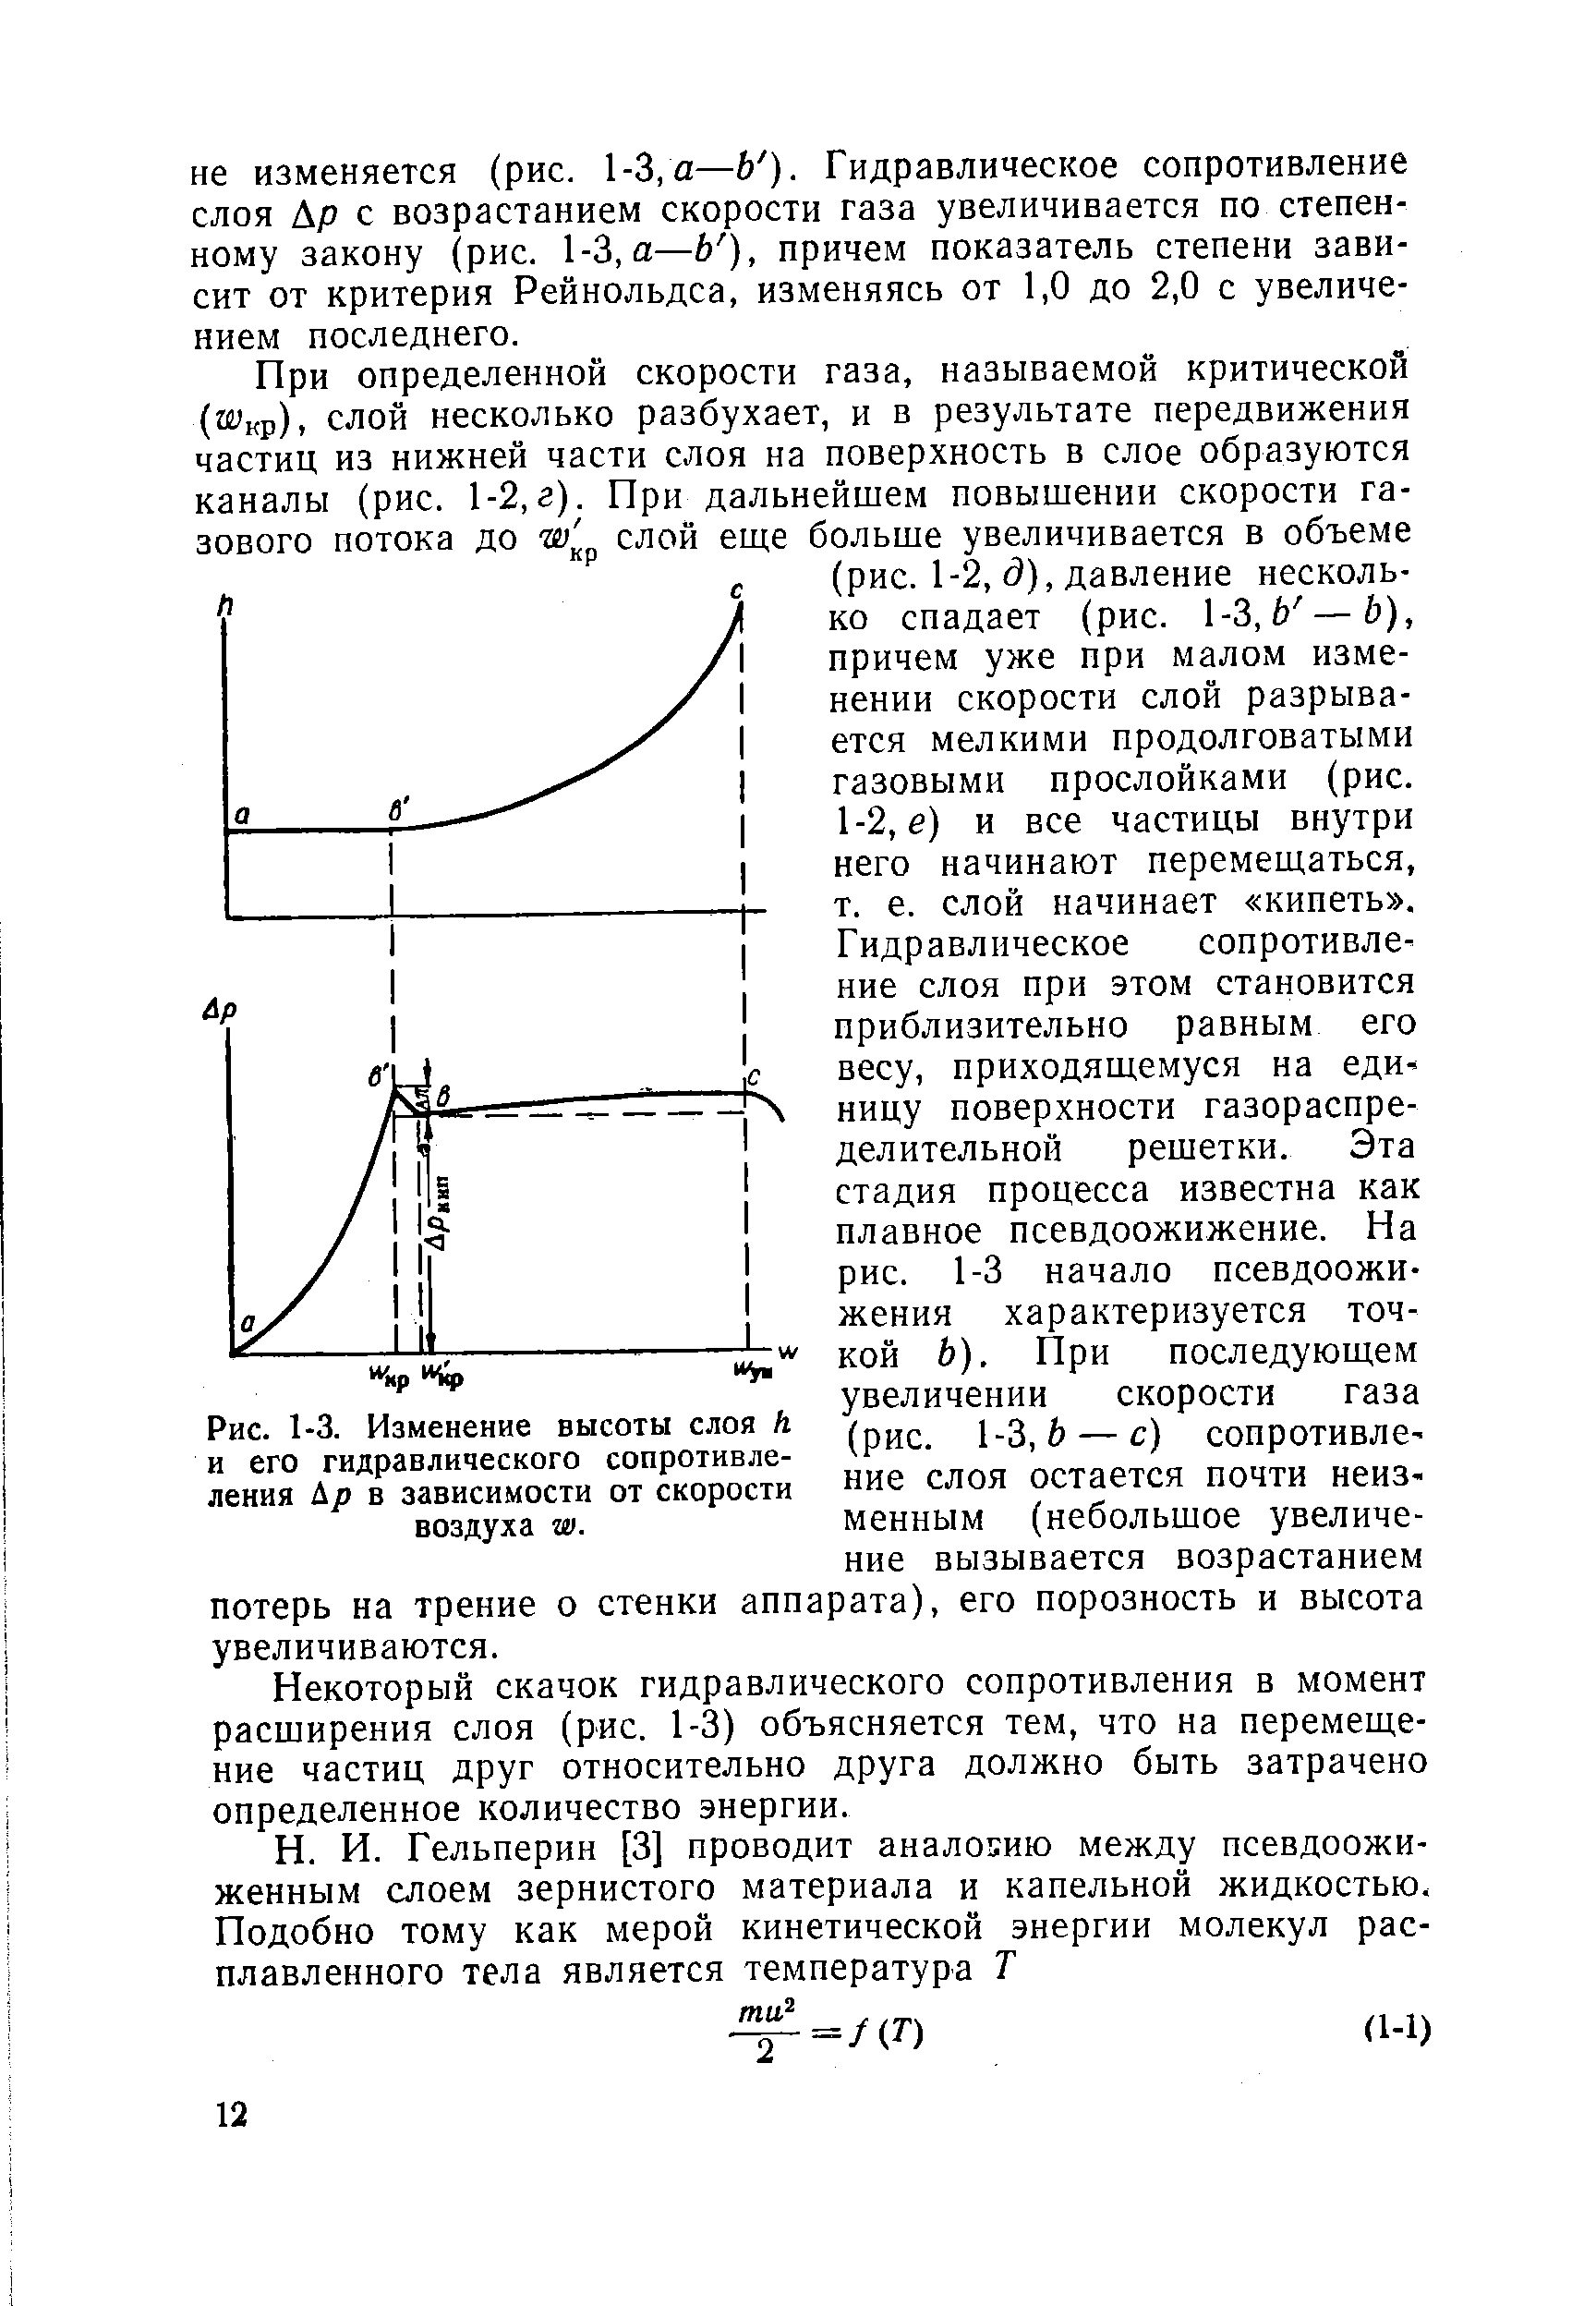 Некоторый скачок гидравлического сопротивления в момент расширения слоя (рис. 1-3) объясняется тем, что на перемещение частиц друг относительно друга должно быть затрачено определенное количество энергии.